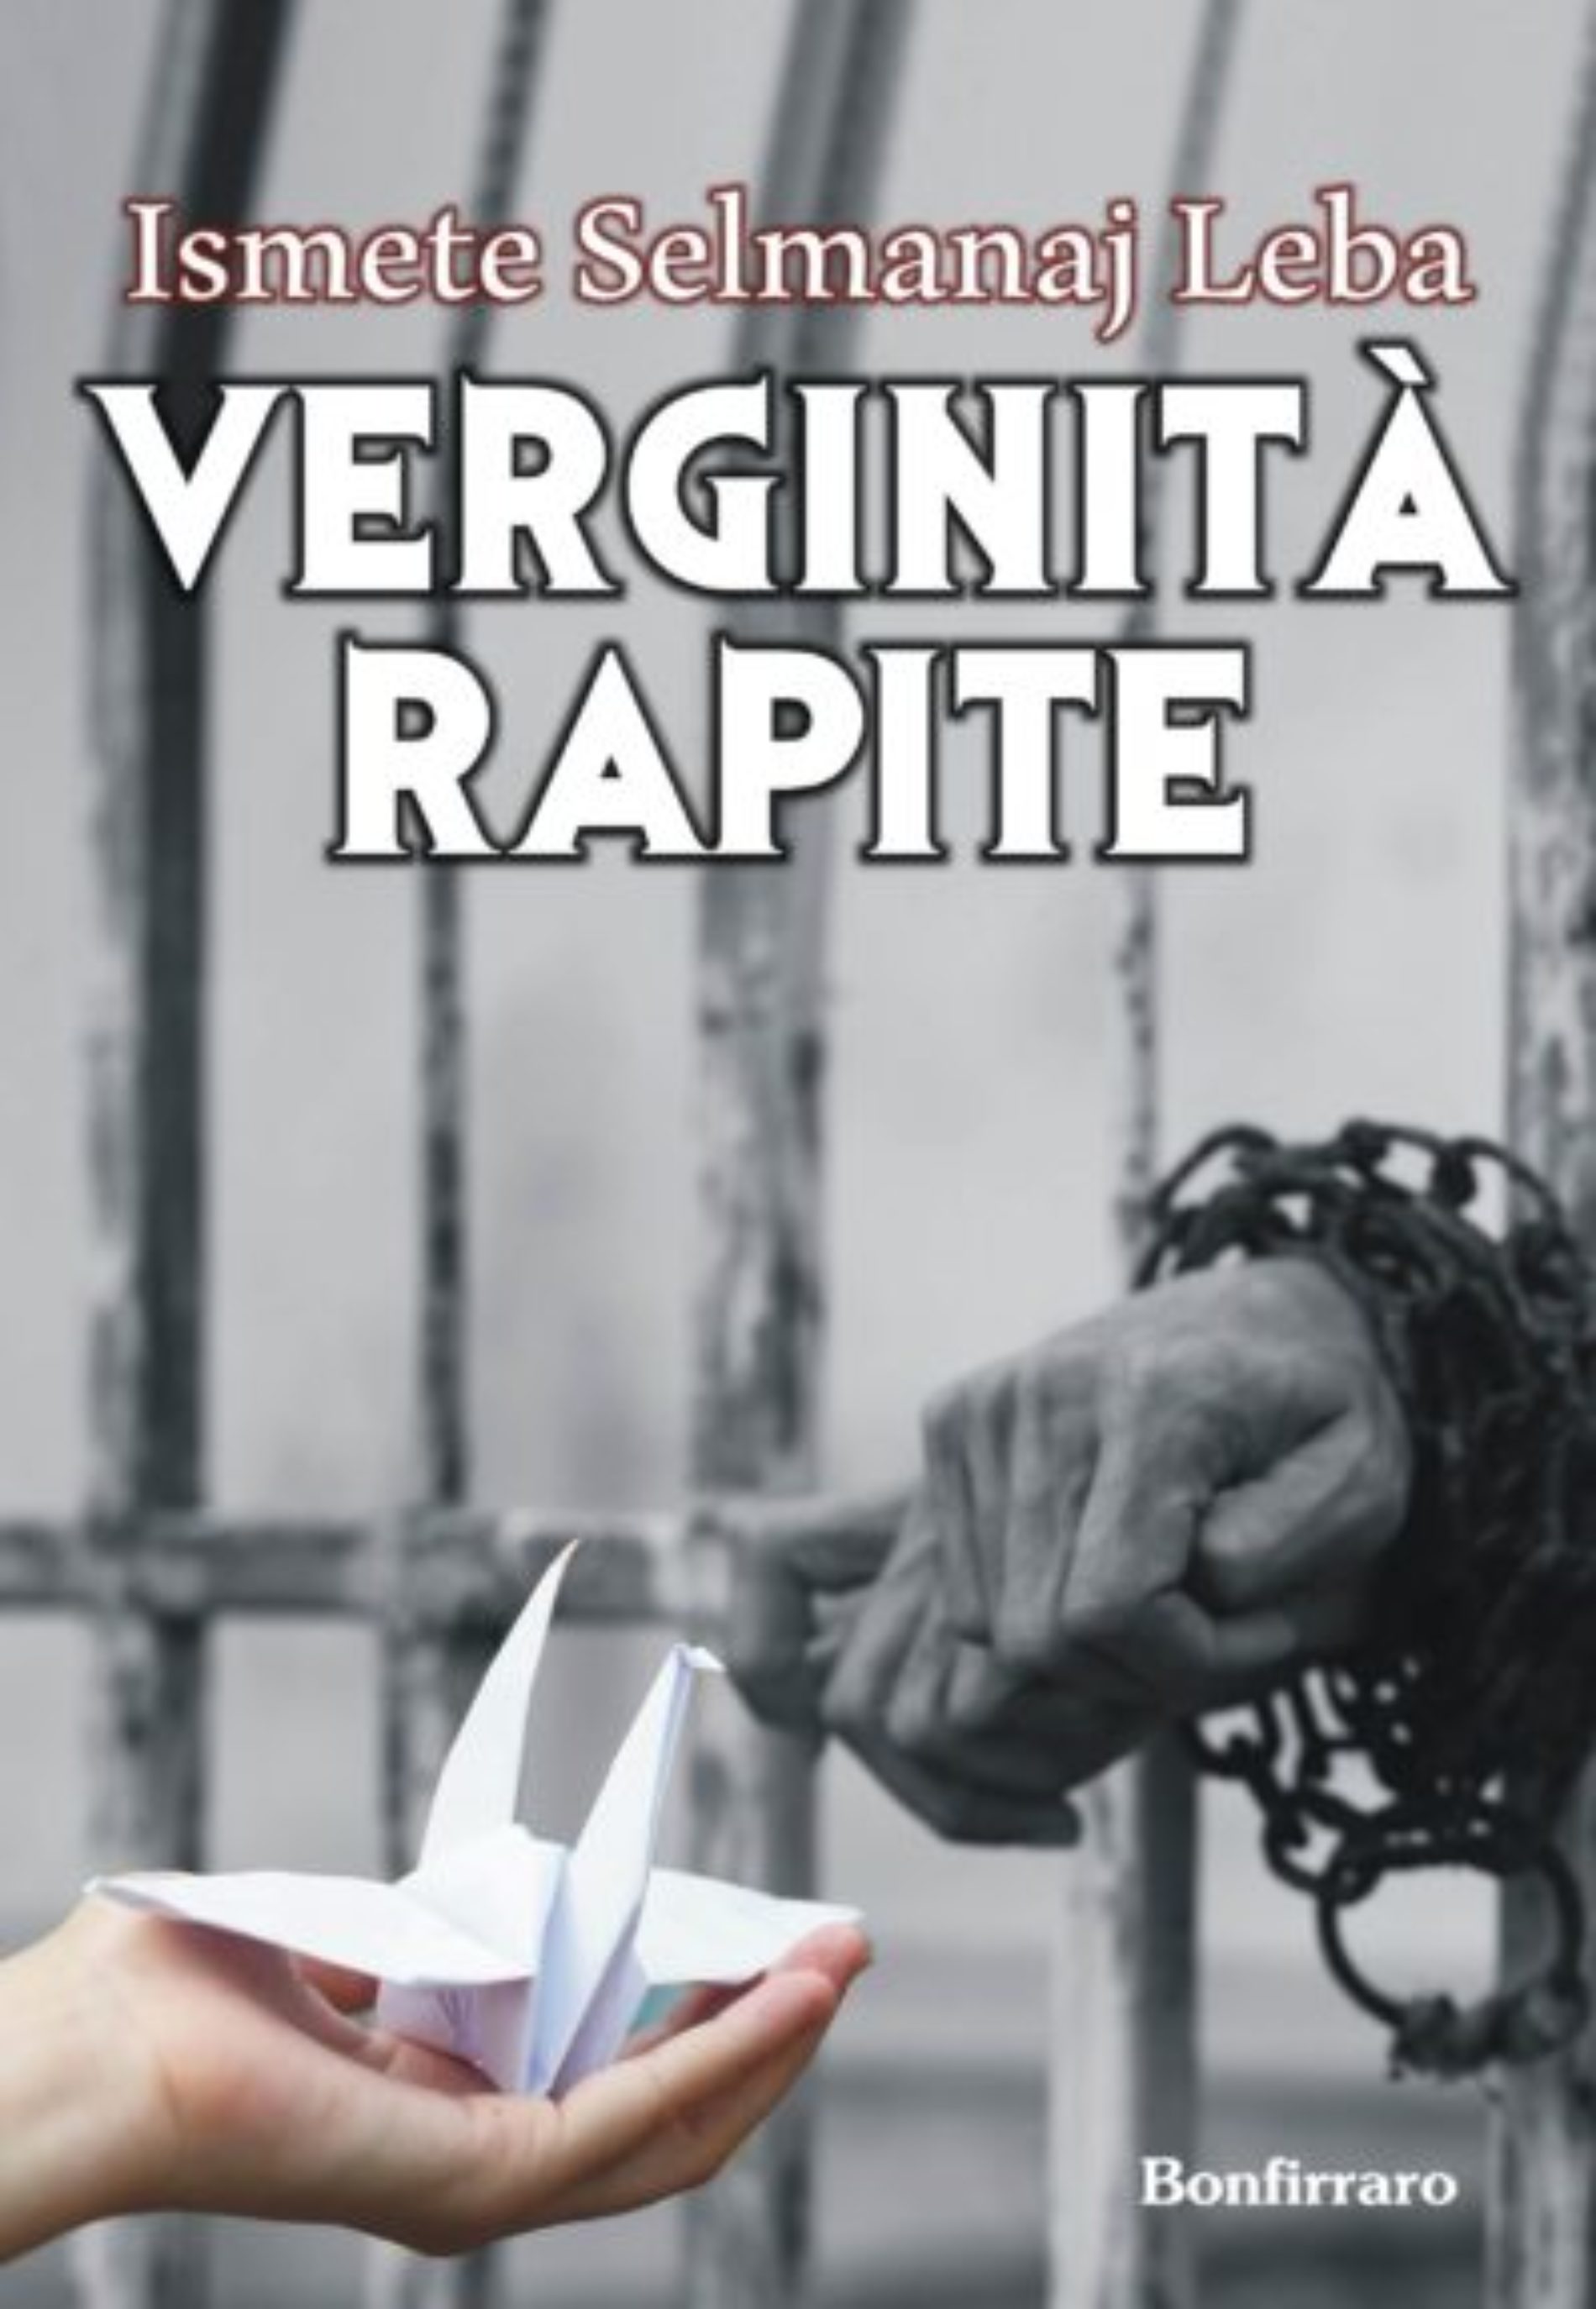 “Verginità rapite”: violenza e libertà nel libro di Ismete Selmanaj